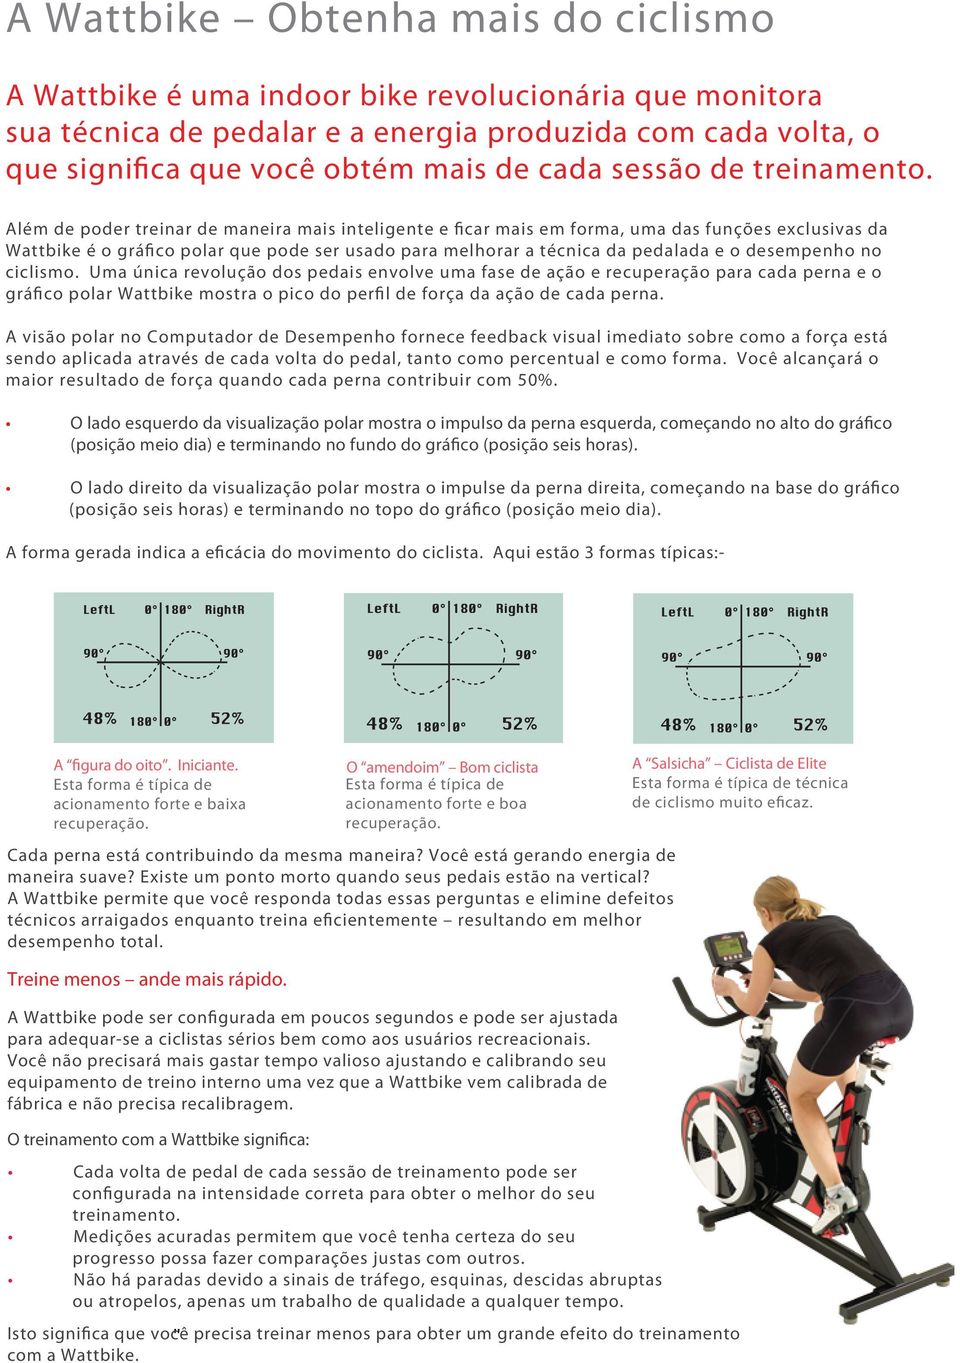 Além de poder treinar de maneira mais inteligente e ficar mais em forma, uma das funções exclusivas da Wattbike é o gráfico polar que pode ser usado para melhorar a técnica da pedalada e o desempenho